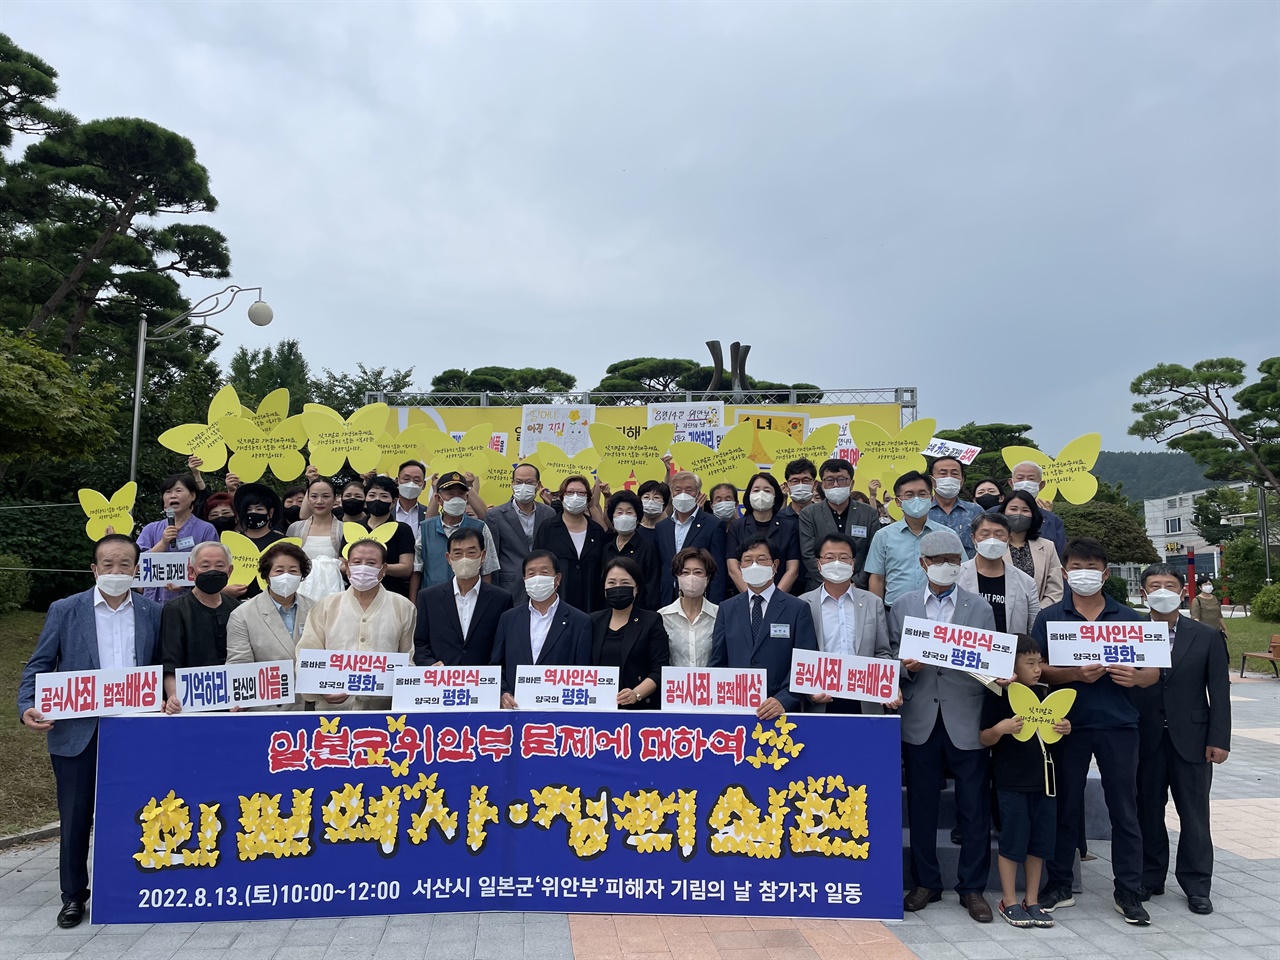 참석자들은 '일본군 위안부 피해자에 대한 한일역사 정의실현'이라고 적힌 펼침막과 함께 일본의 공식 사과를 촉구했다.